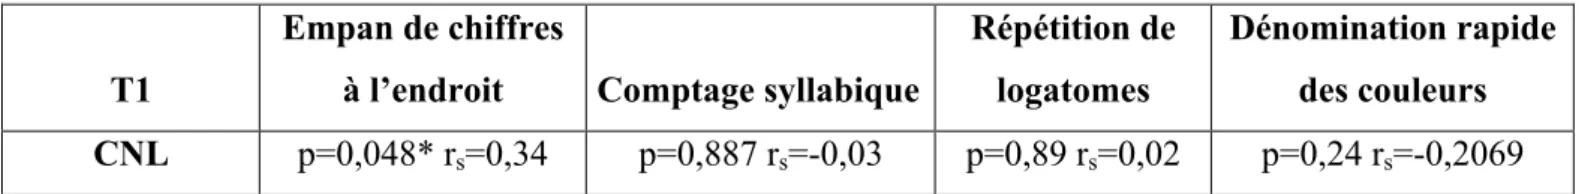 Tableau 6. Corrélations entre la CNL et l’empan de chiffres à l’endroit, le comptage syllabique, la répétition de  logatomes et la dénomination rapide des couleurs à T1 (test de Spearman) 